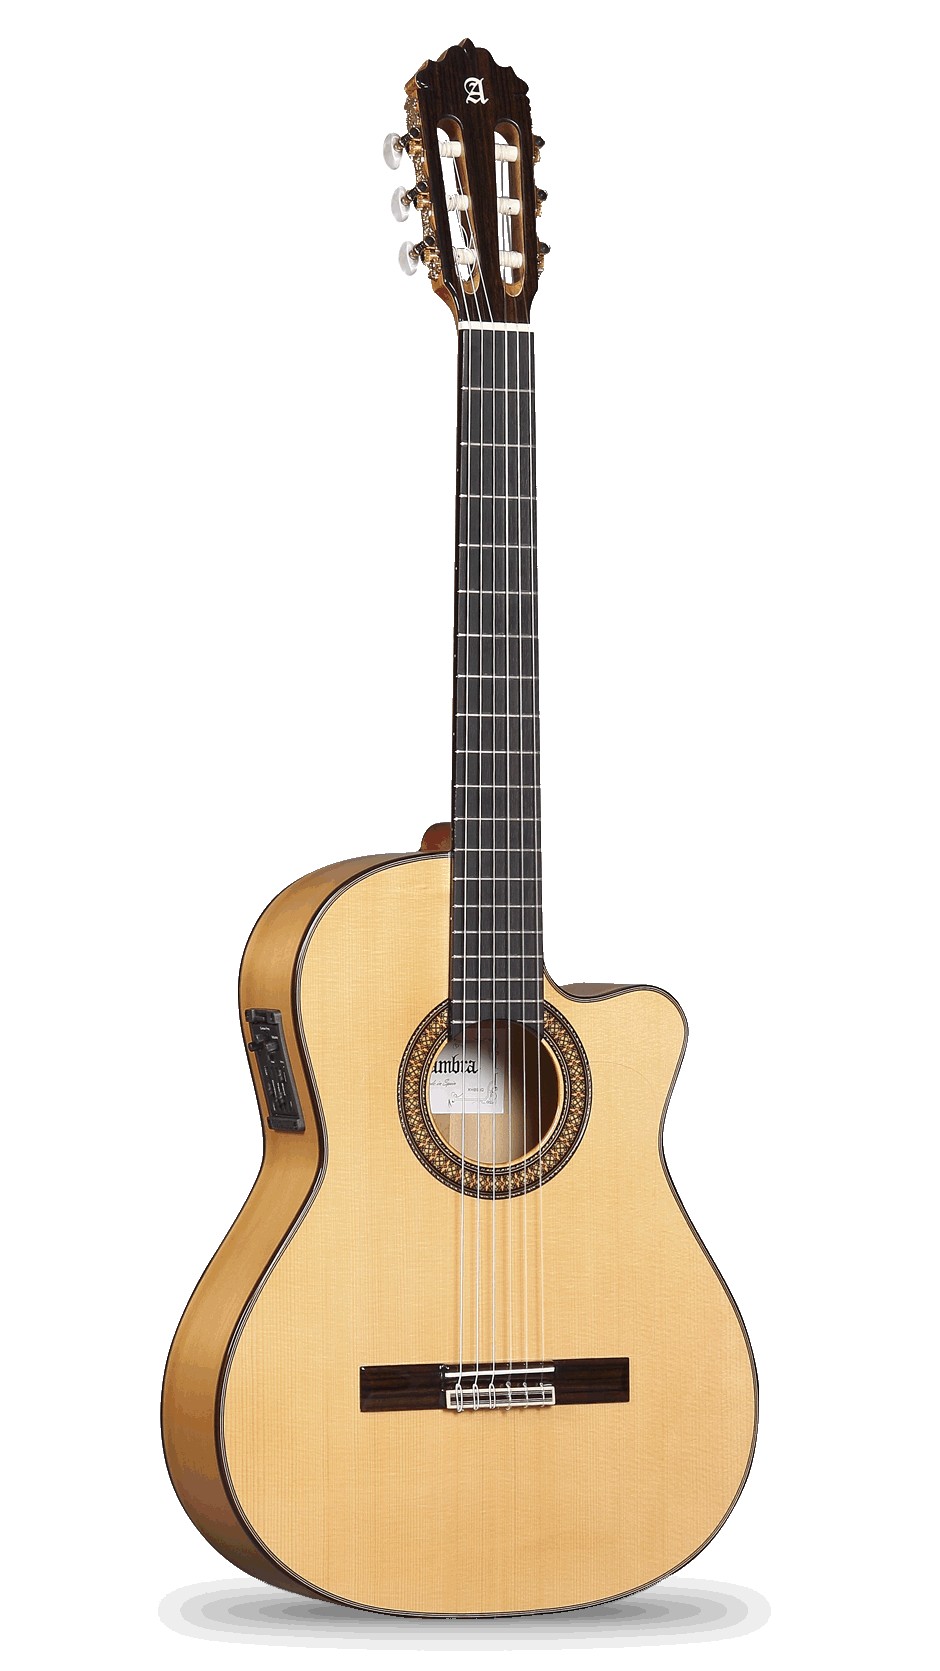 Comprar Guitarra Flamenca Electrificada Alhambra al mejor precio Prieto